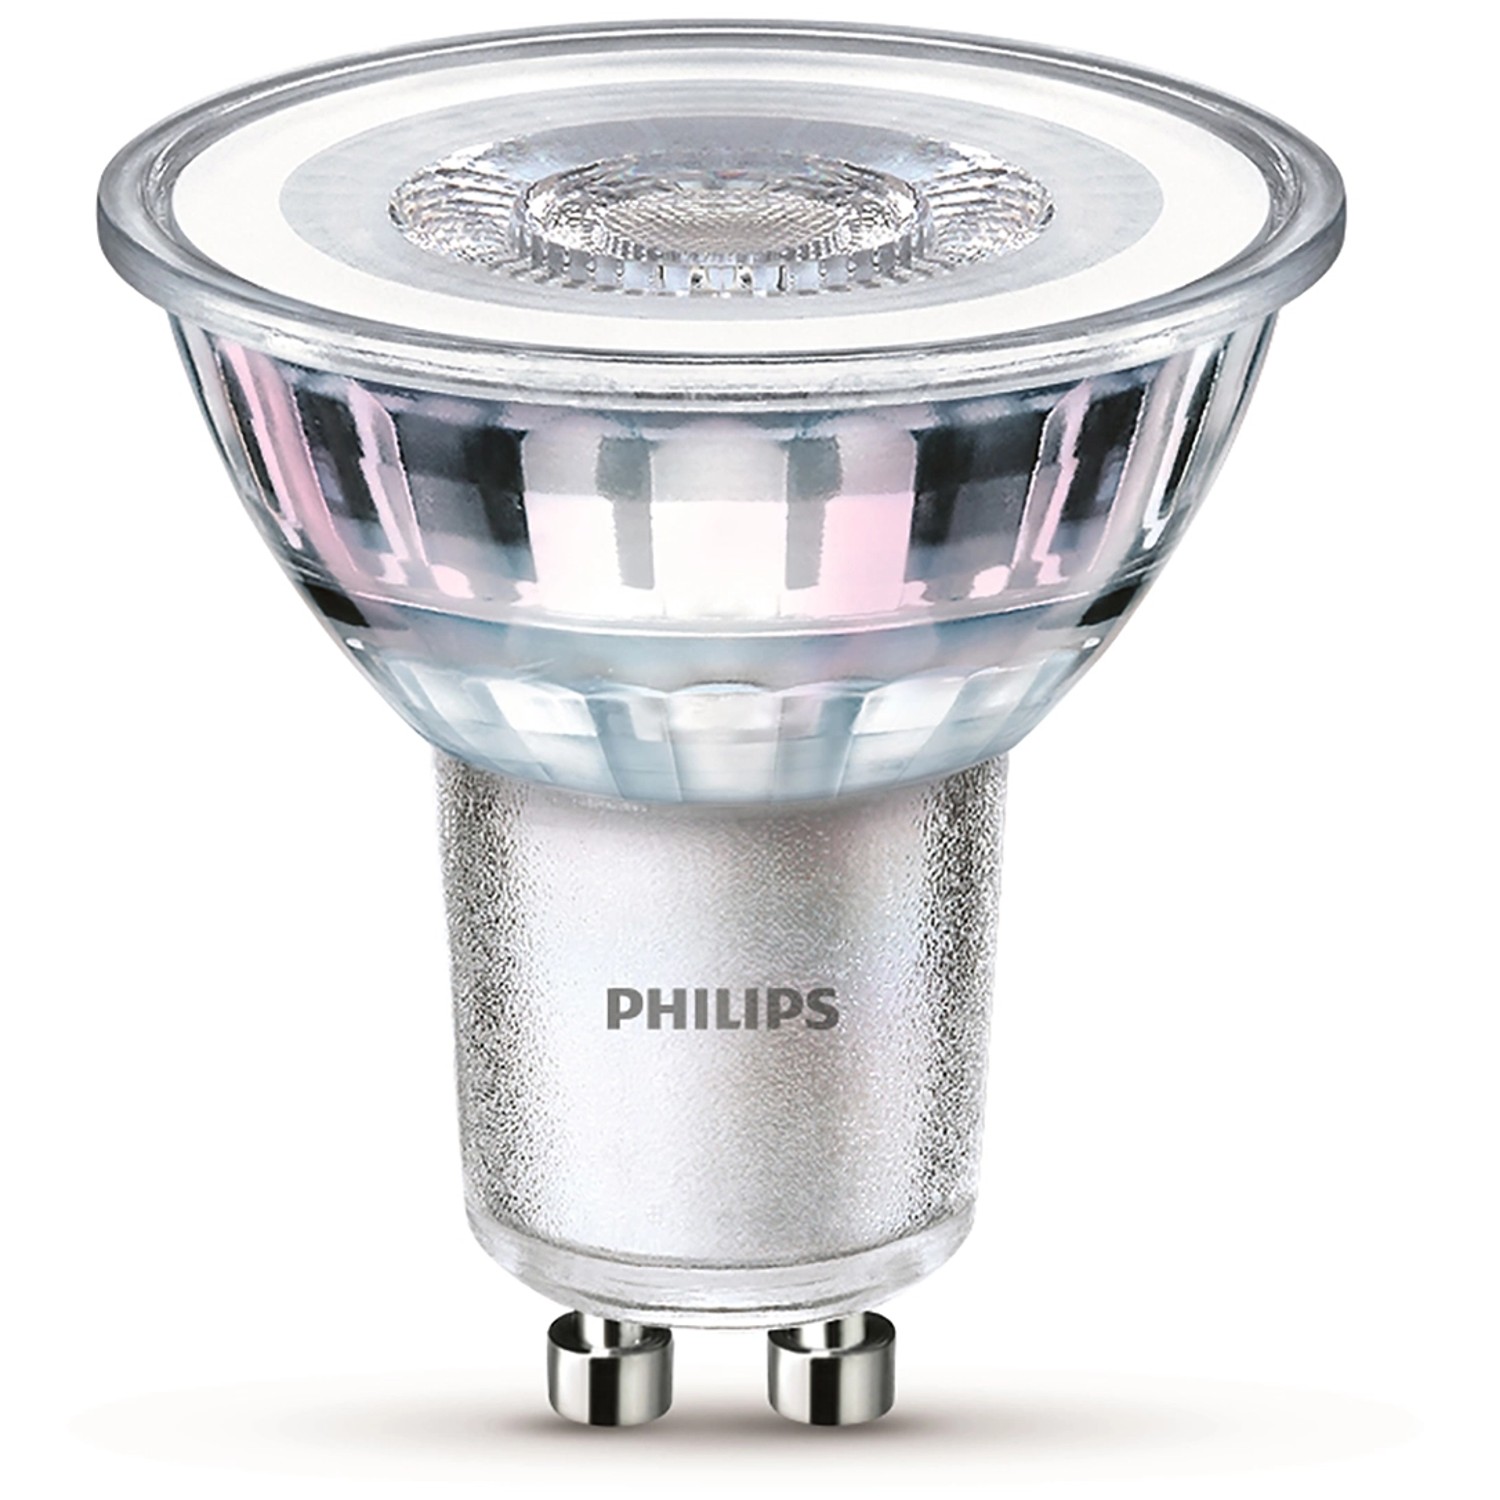 Philips LED-Leuchtmittel GU10 3,5 W Warmweiß 255 lm 5,4 x 5 cm (H x Ø)